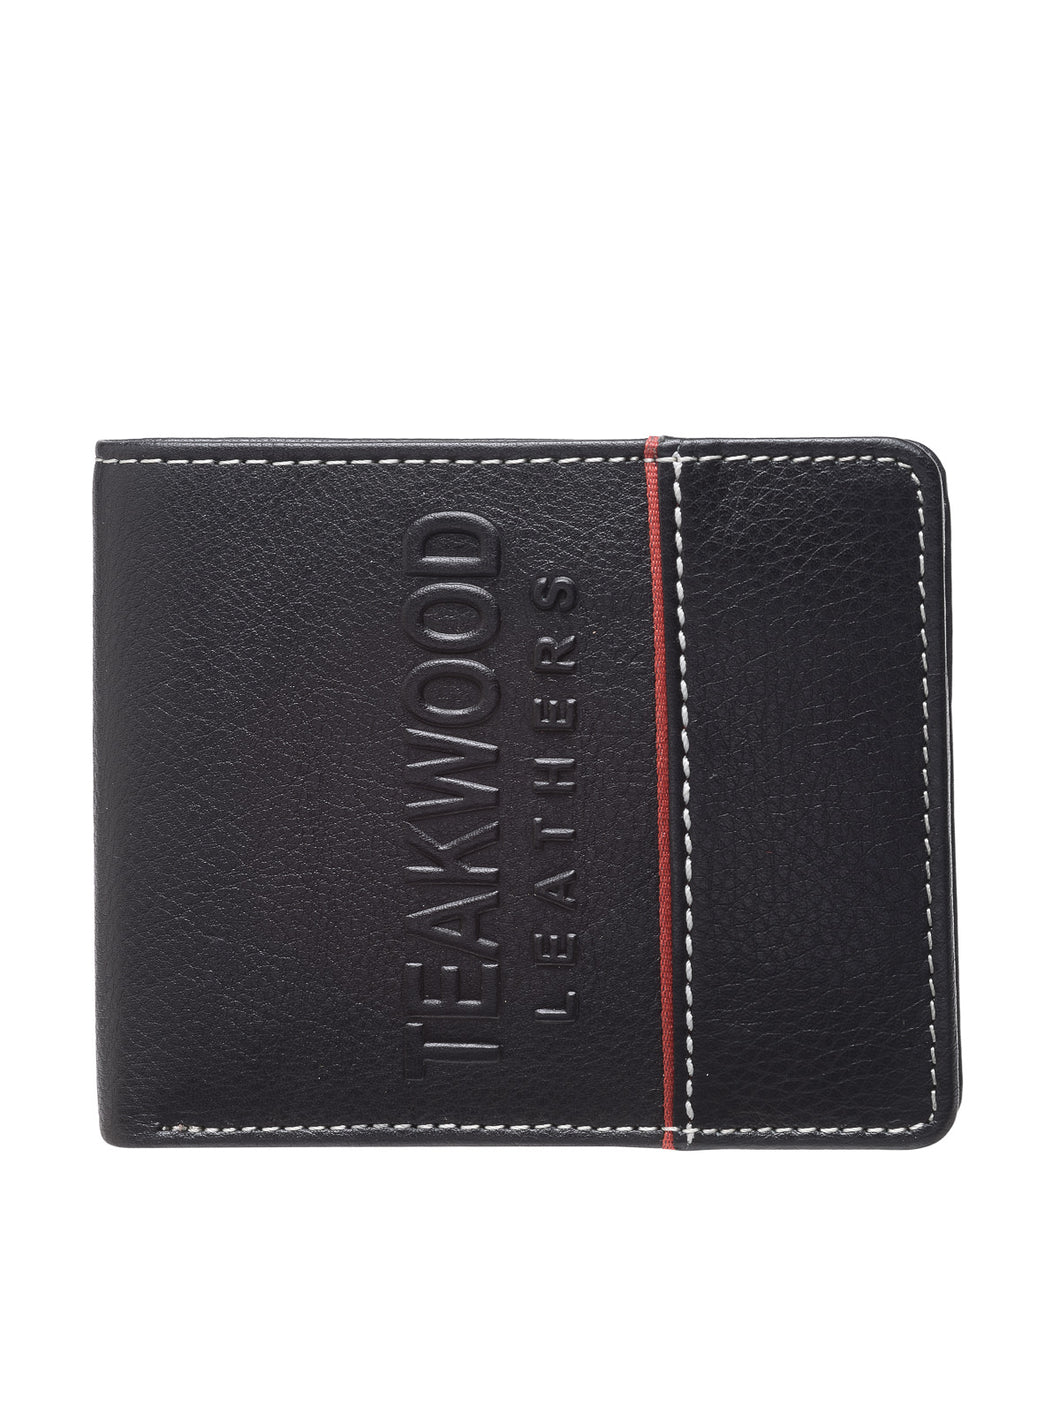 Teakwood Genuine Leather Wallet - Black